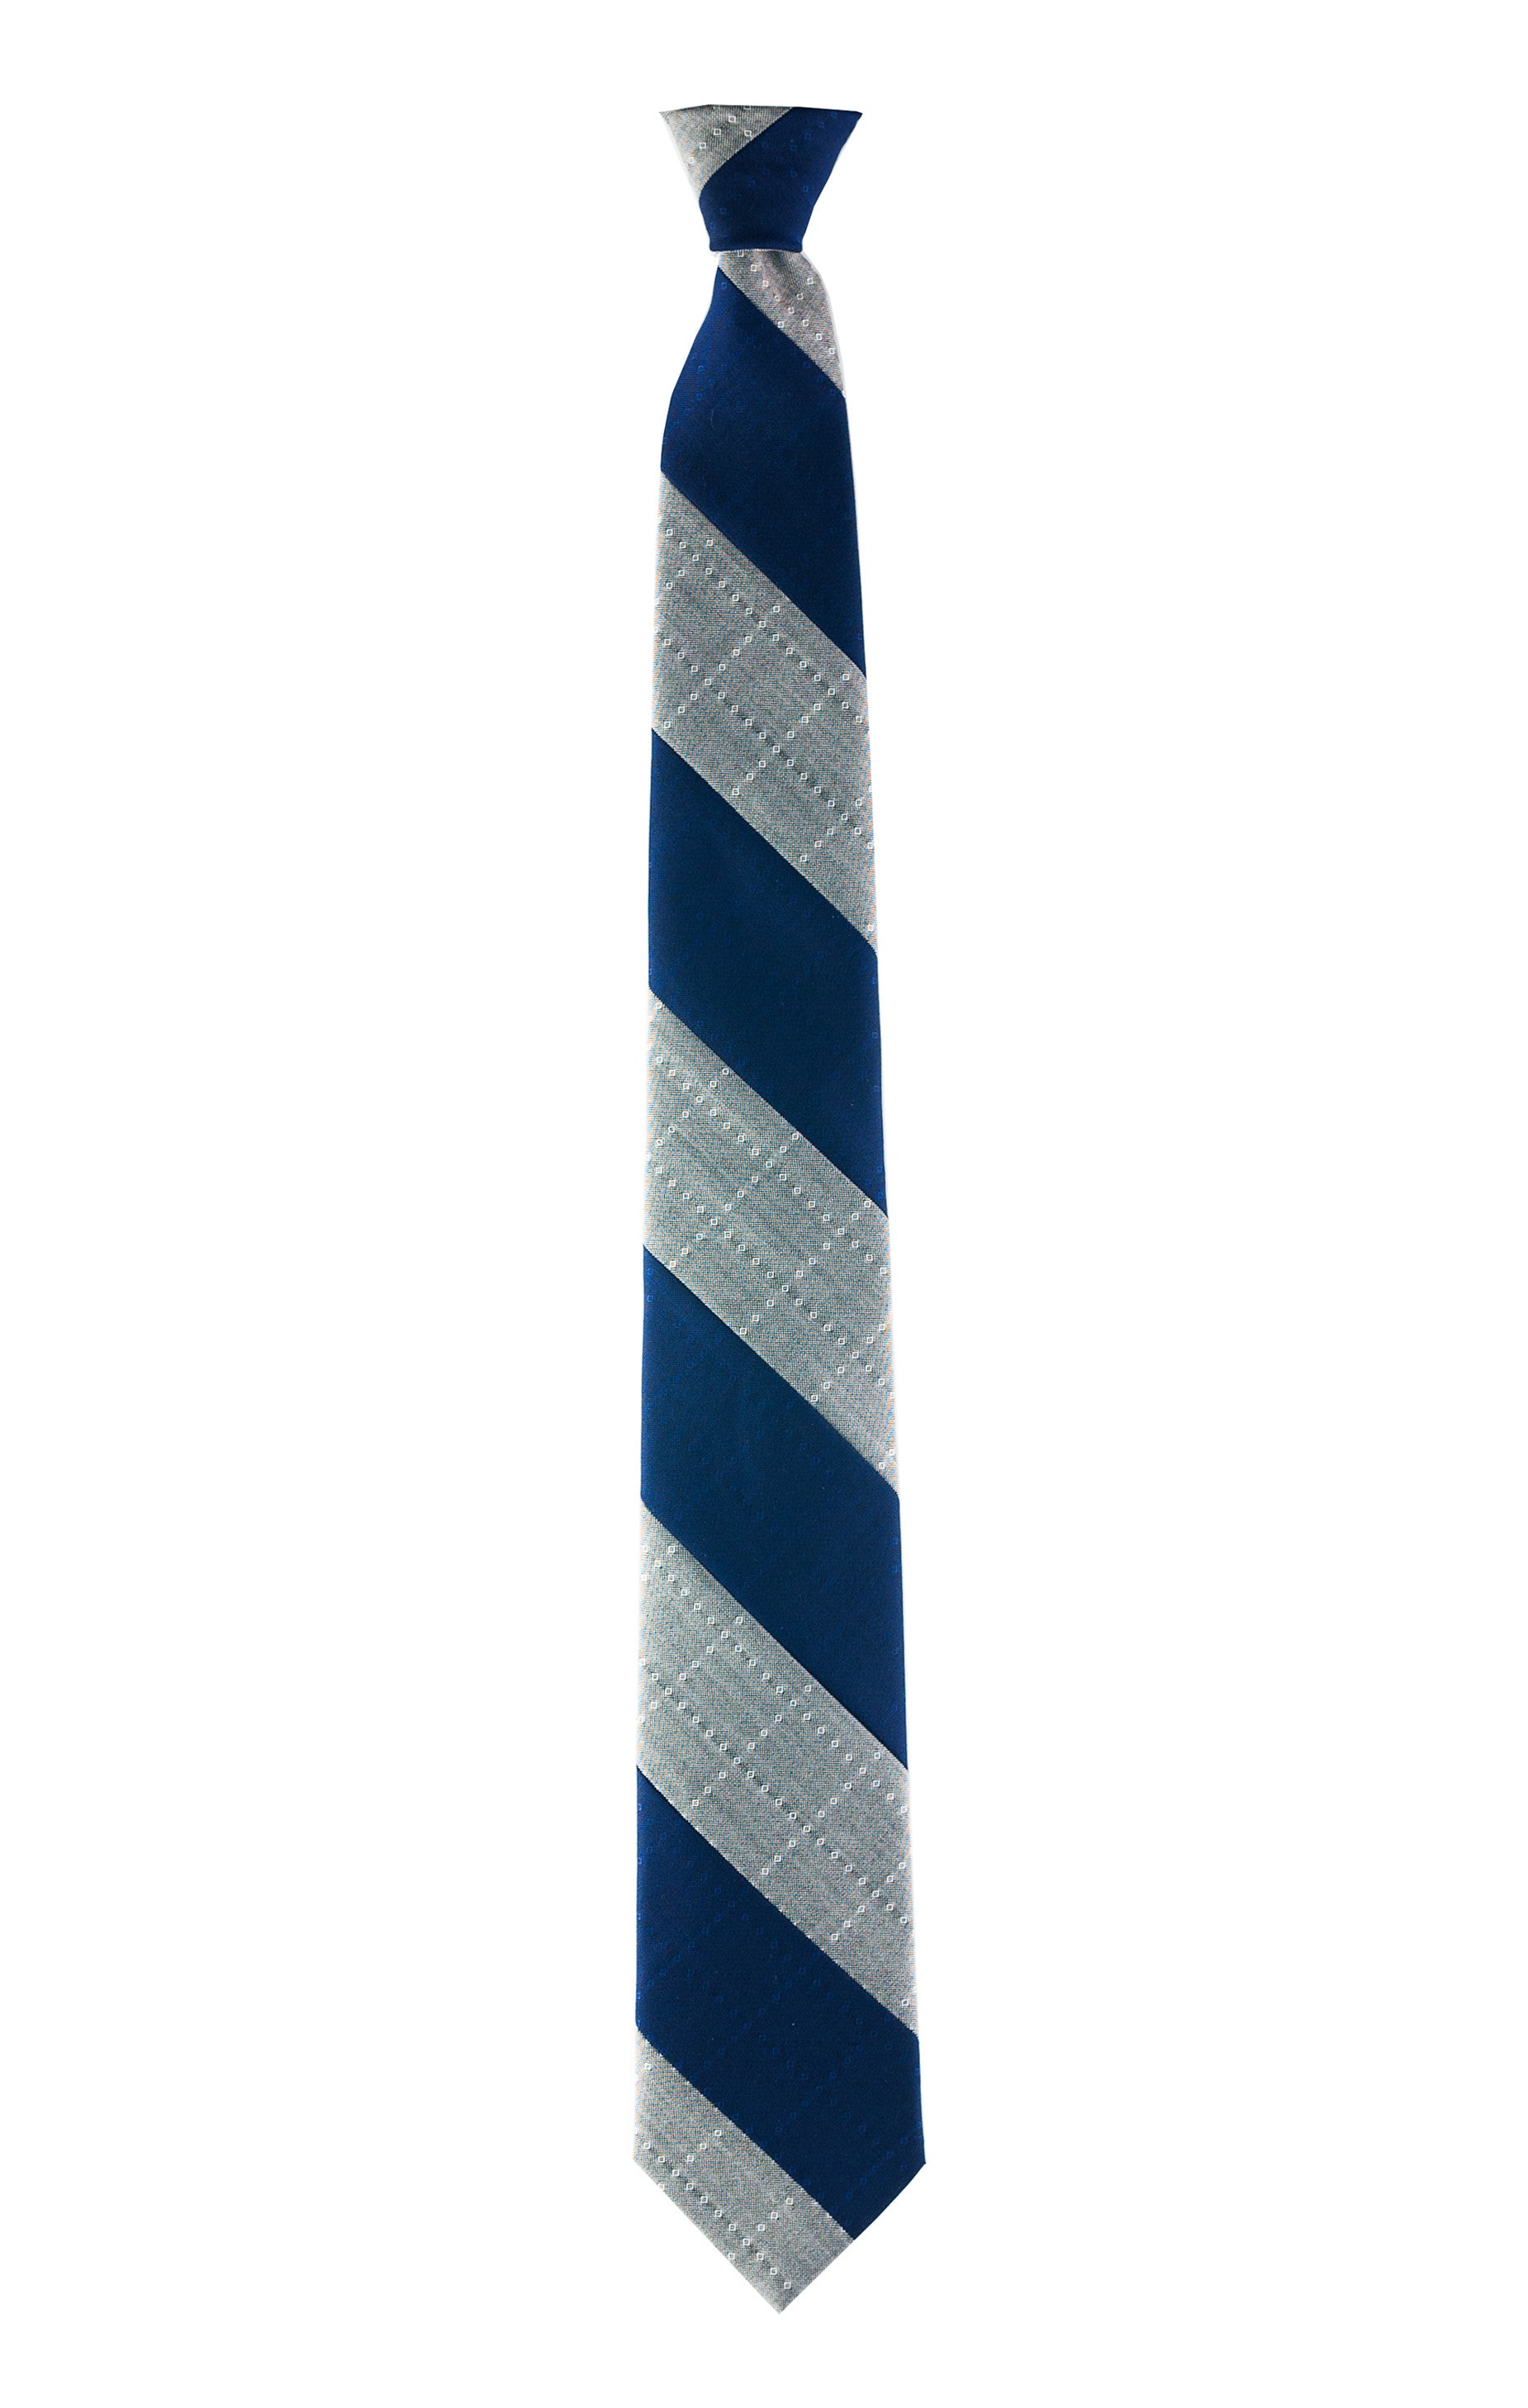 PW Tie I - Margo Petitti necktie - scarf 